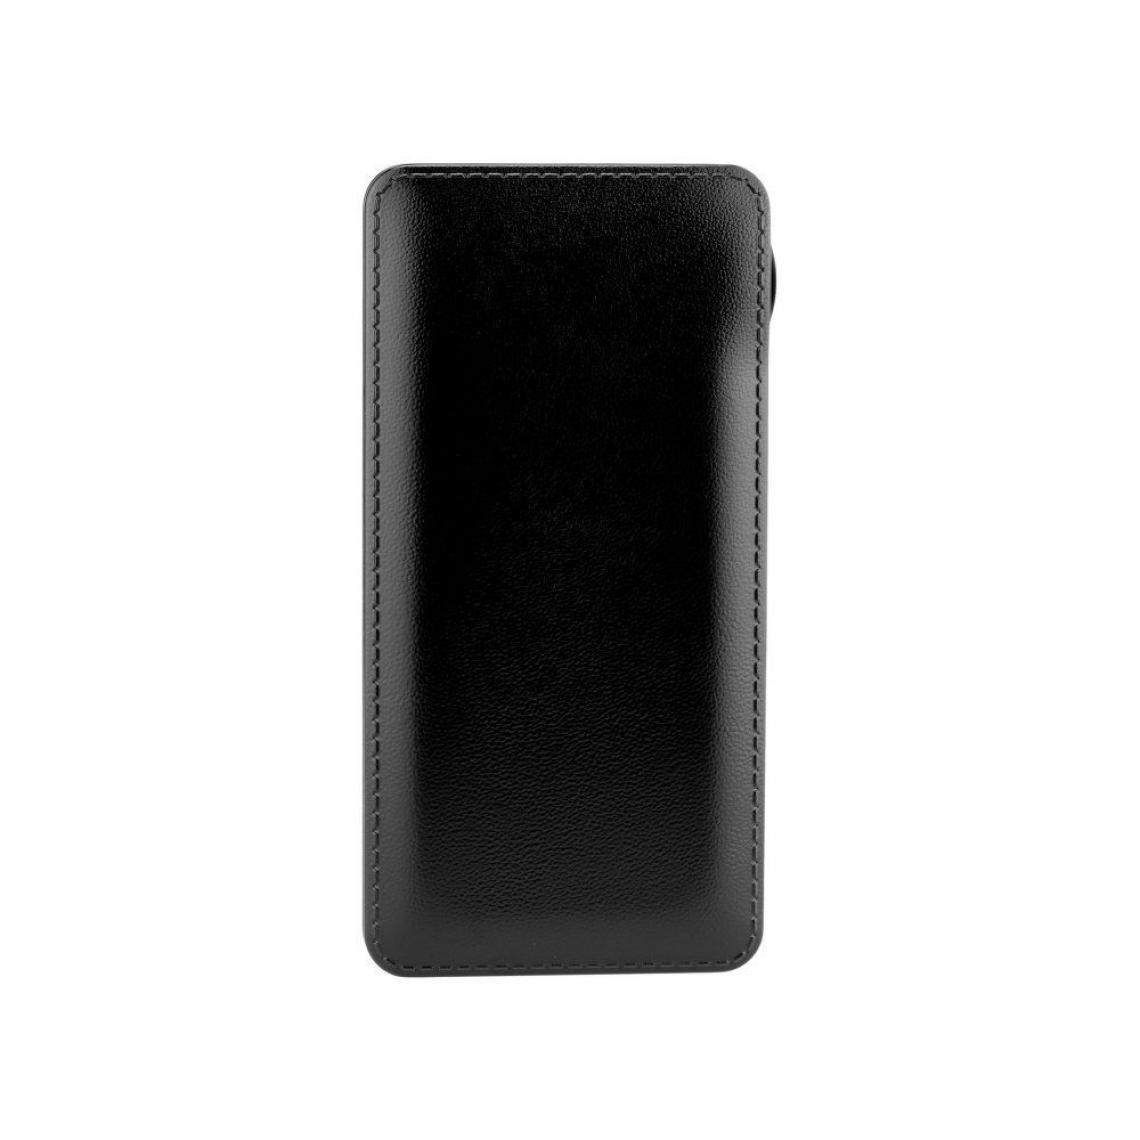 Ozzzo - Chargeur batterie externe 20000 mAh powerbank ozzzo noir pour Samsung Galaxy Tab Active Pro - Autres accessoires smartphone